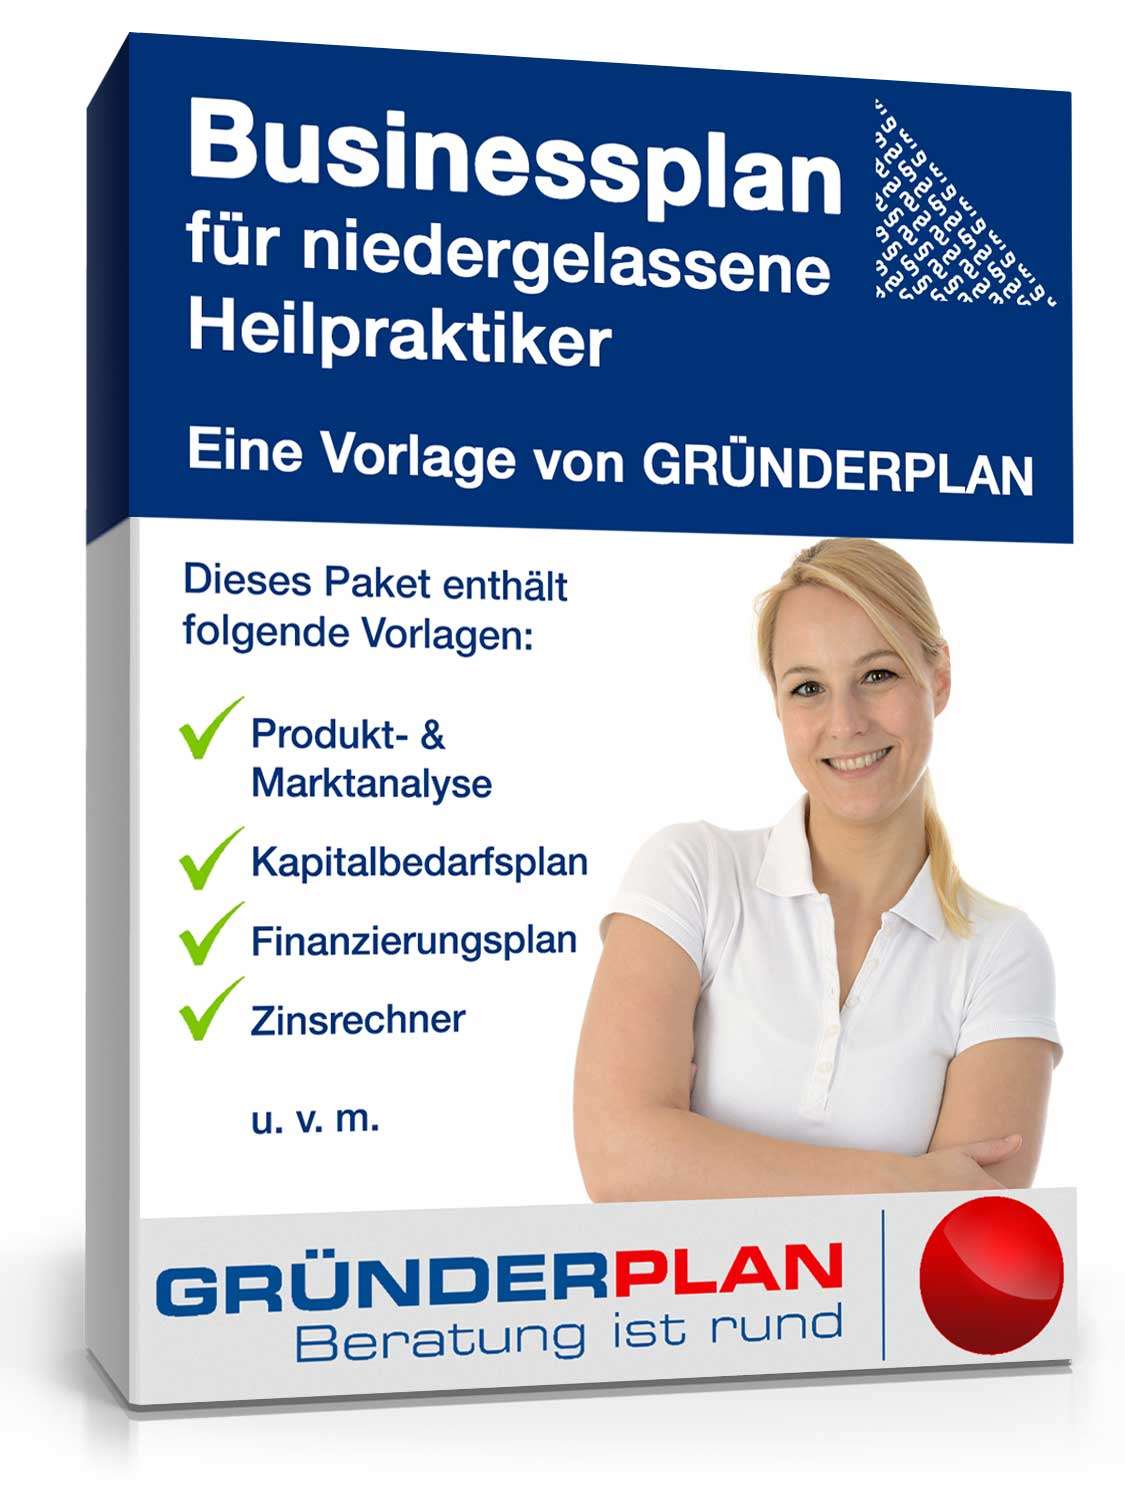 Hauptbild des Produkts: Businessplan für niedergelassene Heilpraktiker von Gründerplan